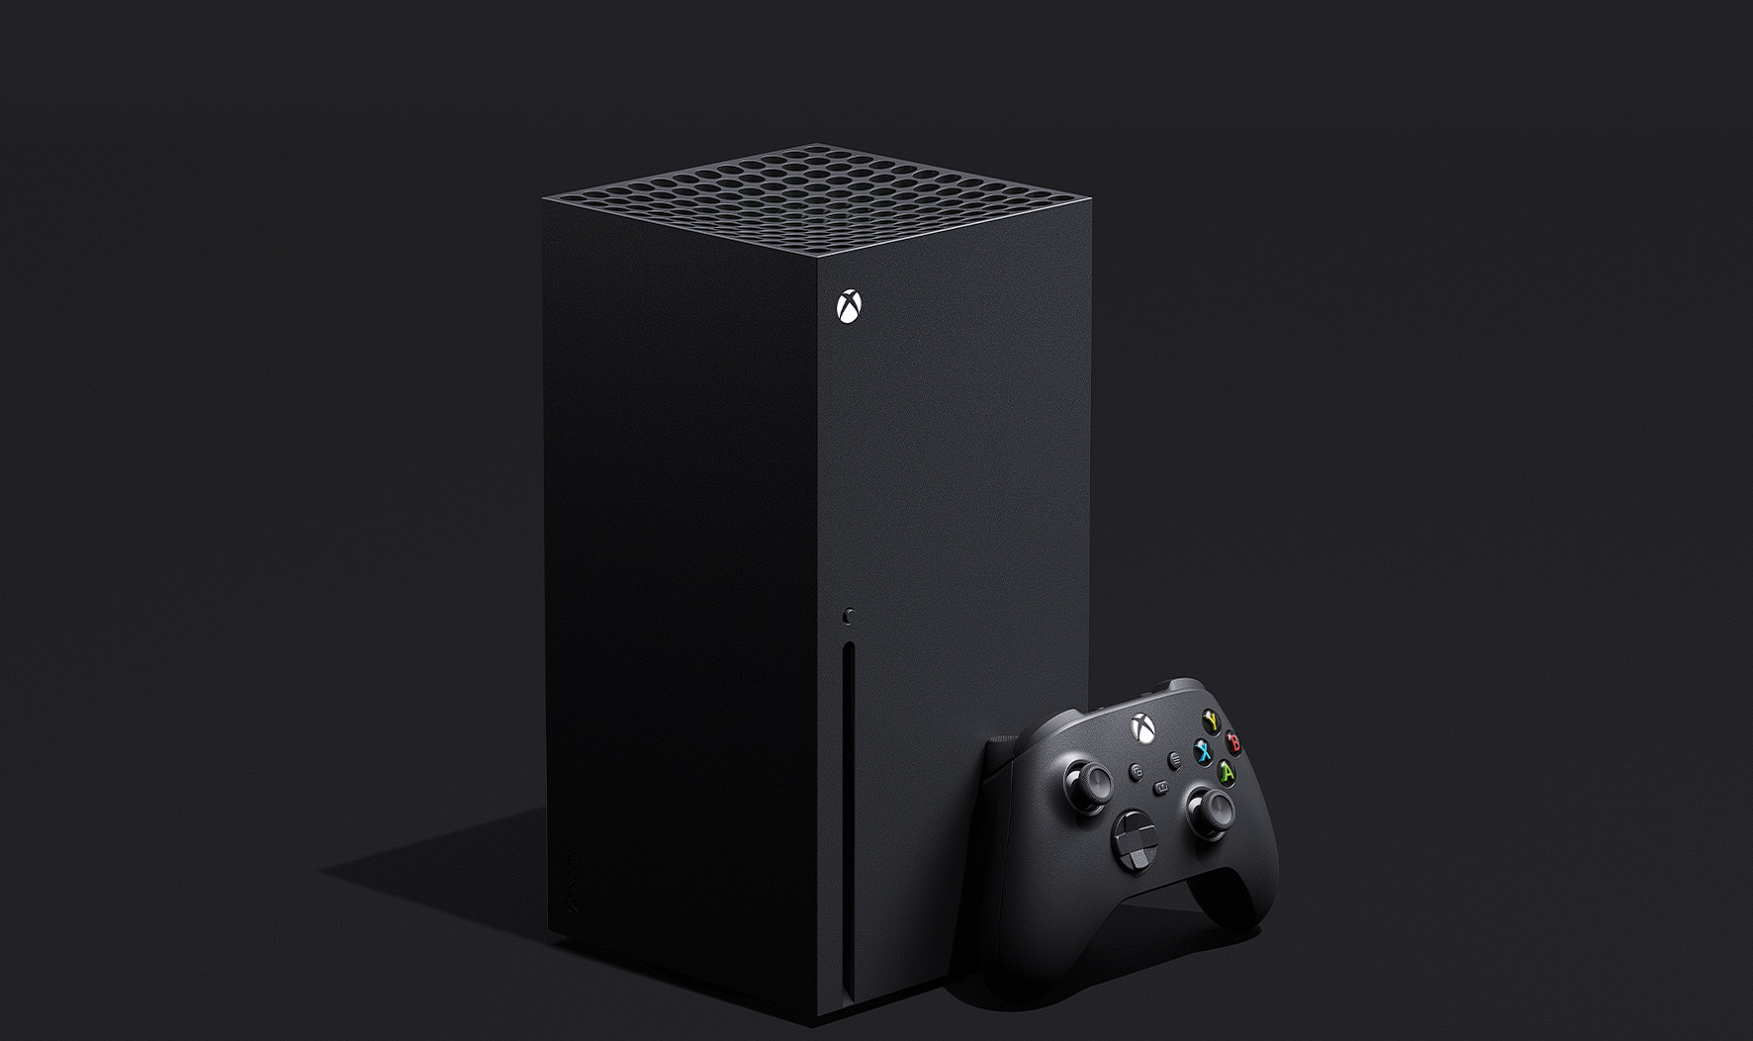 Microsoft ogłosił Xbox Series X - konsolę nowej generacji i głównego konkurenta dla PlayStation 5 (wideo)